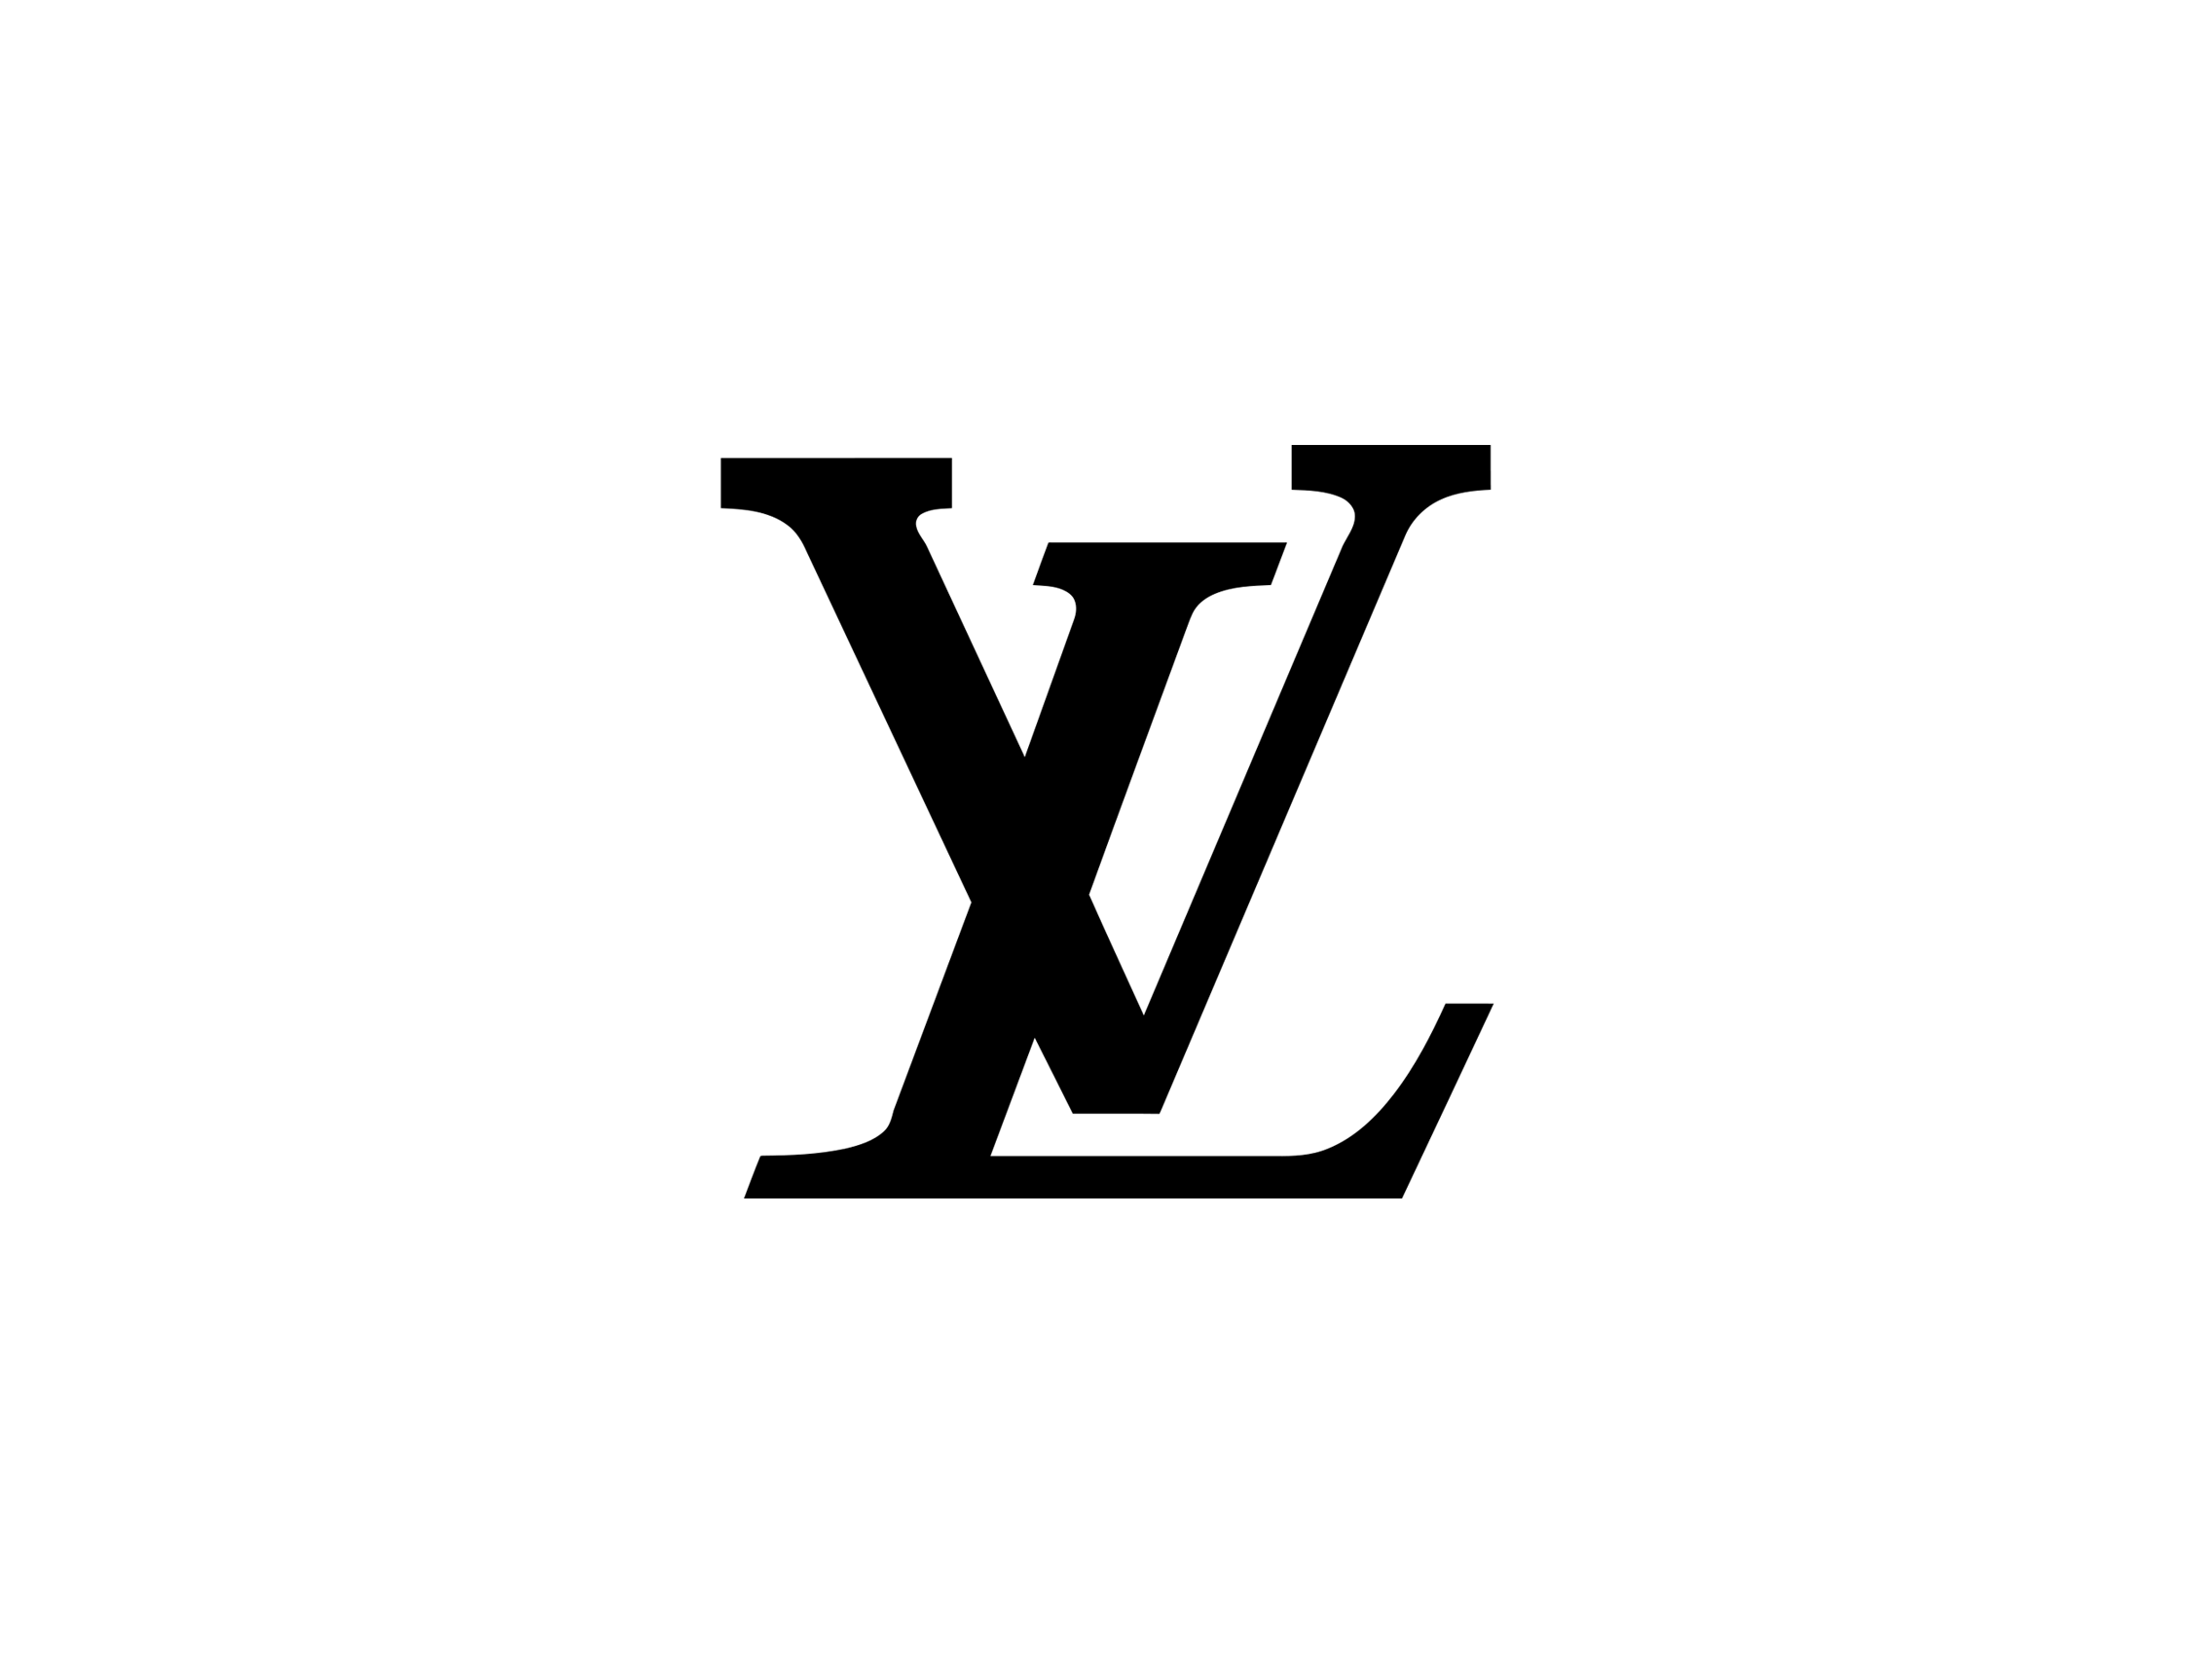 Louis Vuitton Small Logo - Louis Vuitton Authentication Service - Meme's Treasures